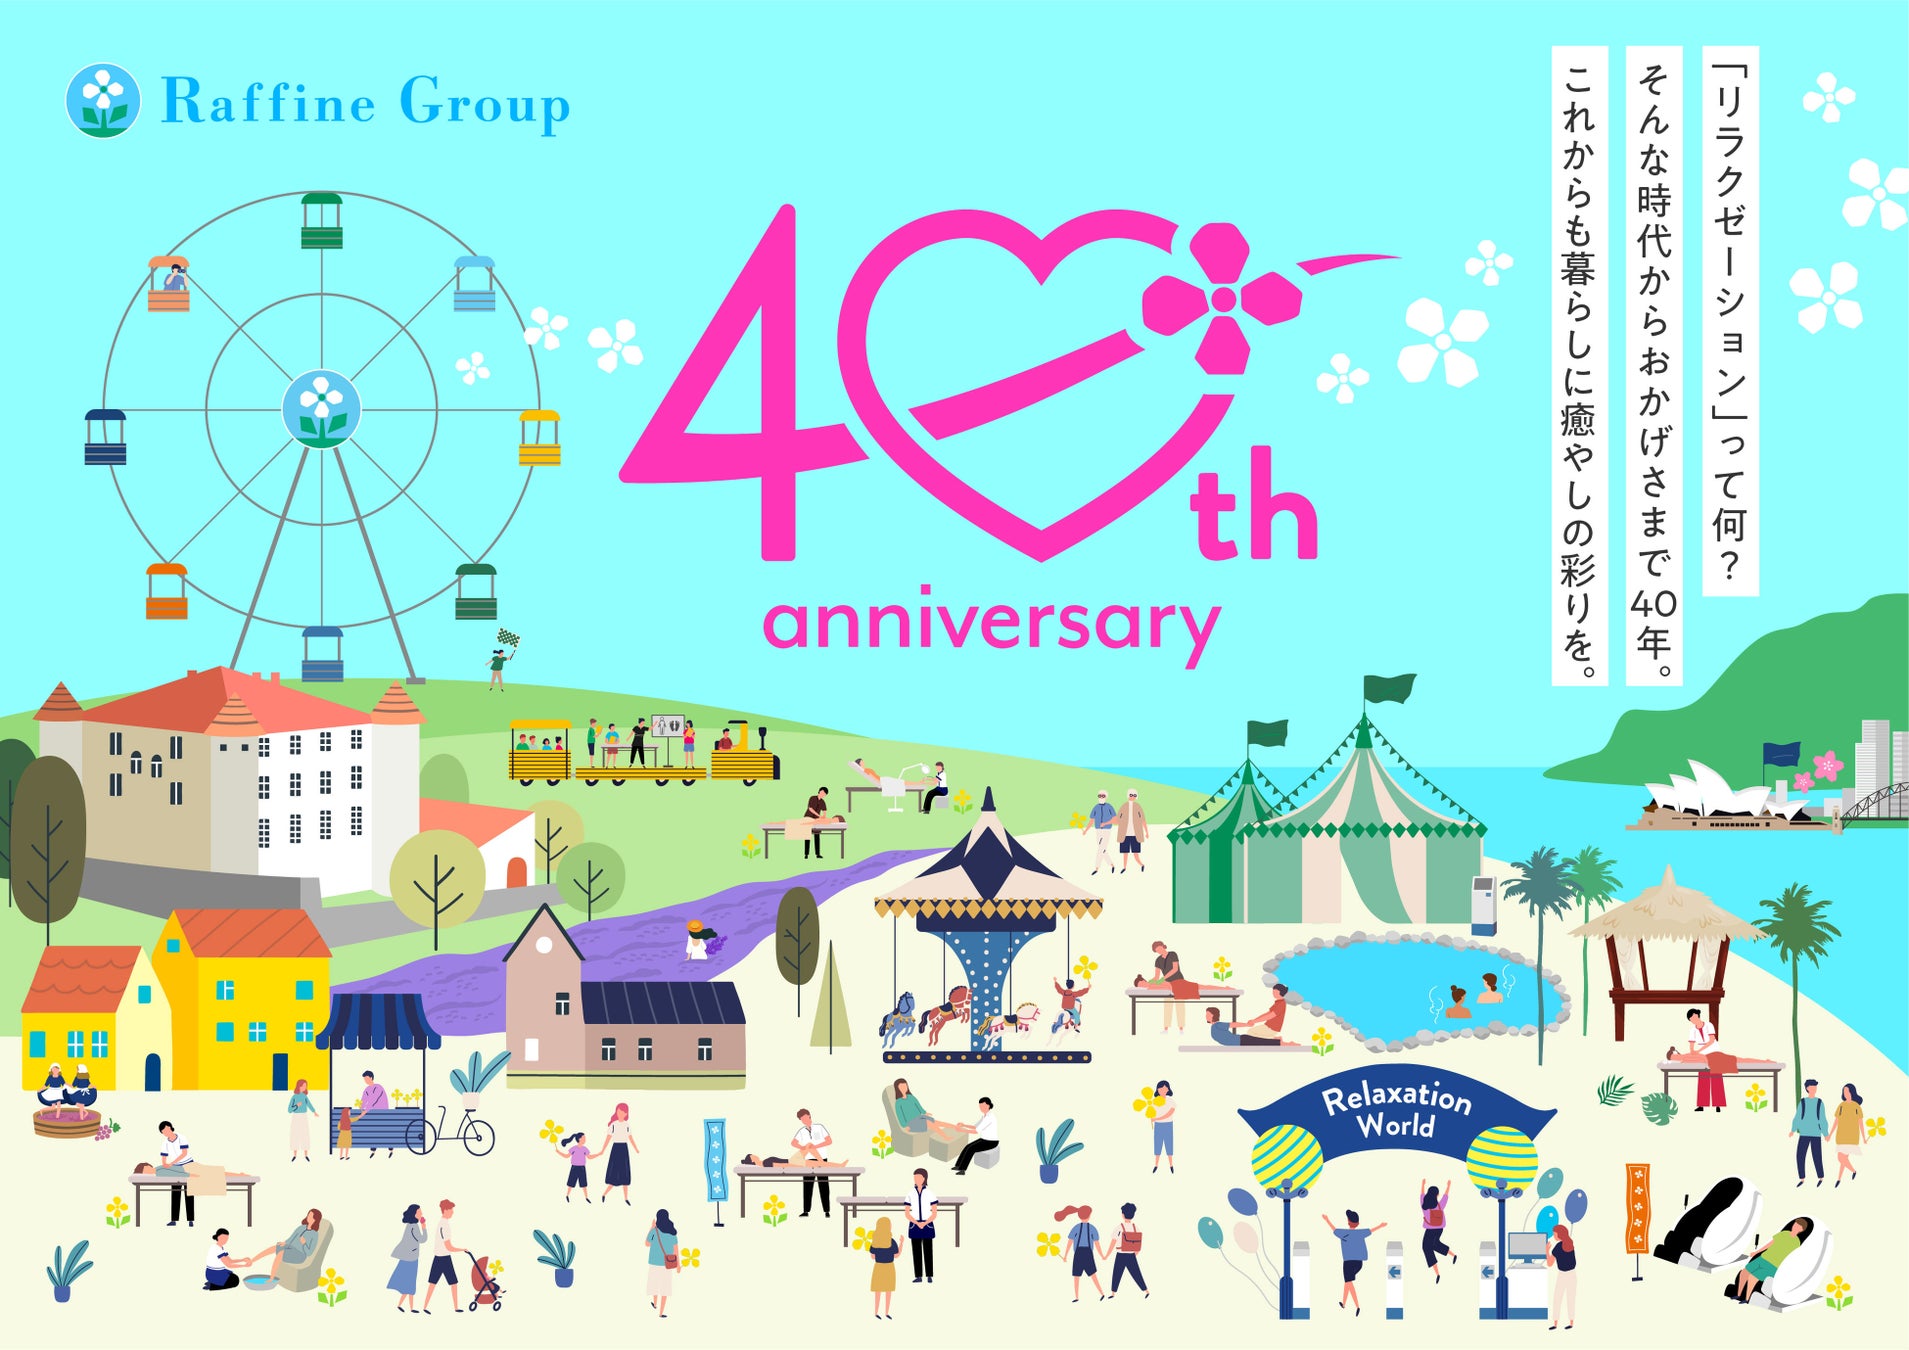 ラフィネグループ 40th Anniversary「100年企業」を目指して